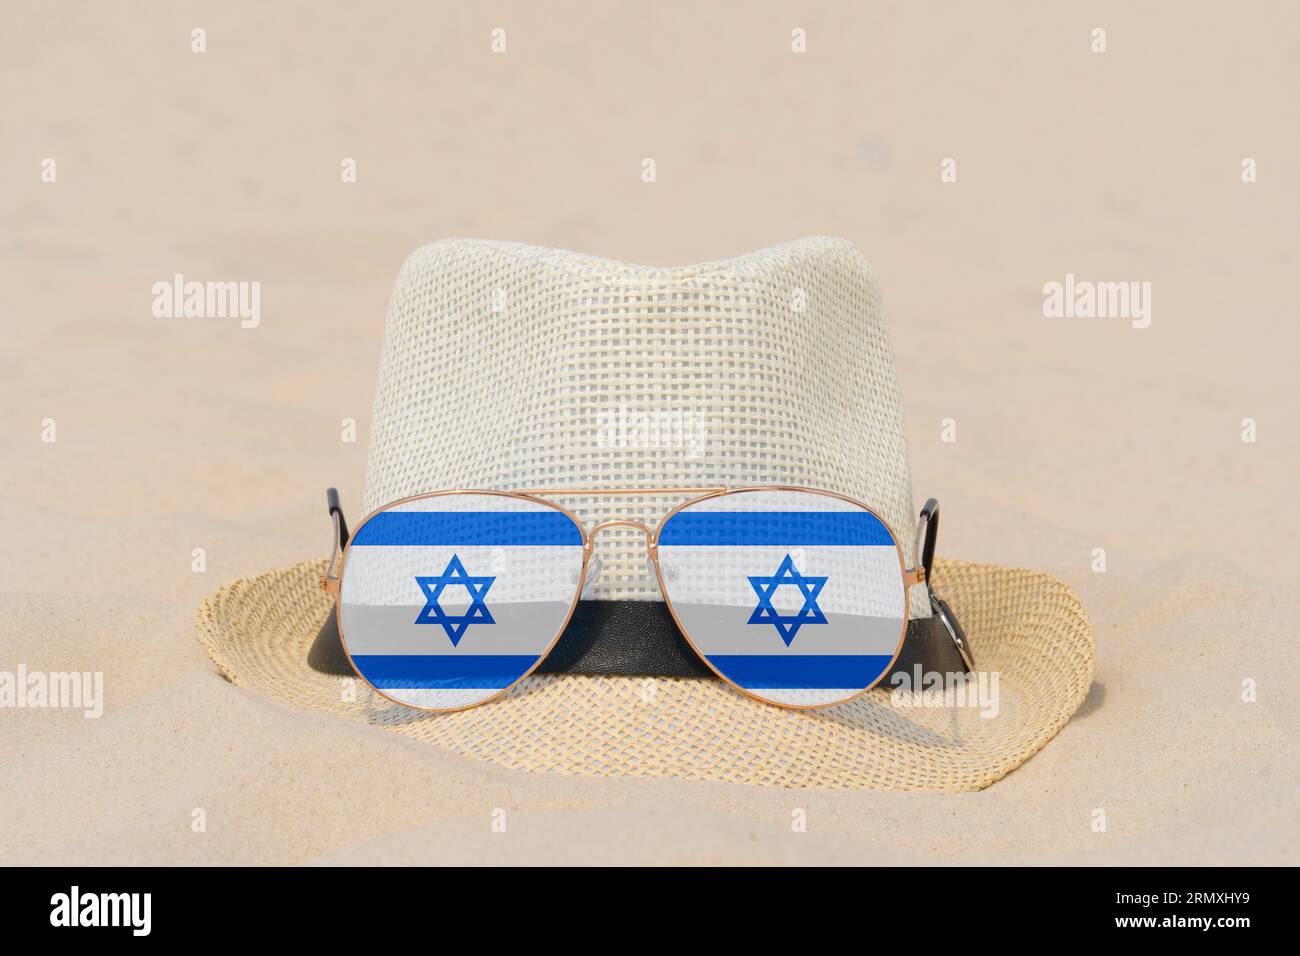 Sonnenbrille mit Gläsern in Form einer Flagge Israels und einem Hut liegen auf Sand. Konzept von Sommerferien und Reisen in Israel. Sommerruhe. Weihnachtszeit Stockfoto